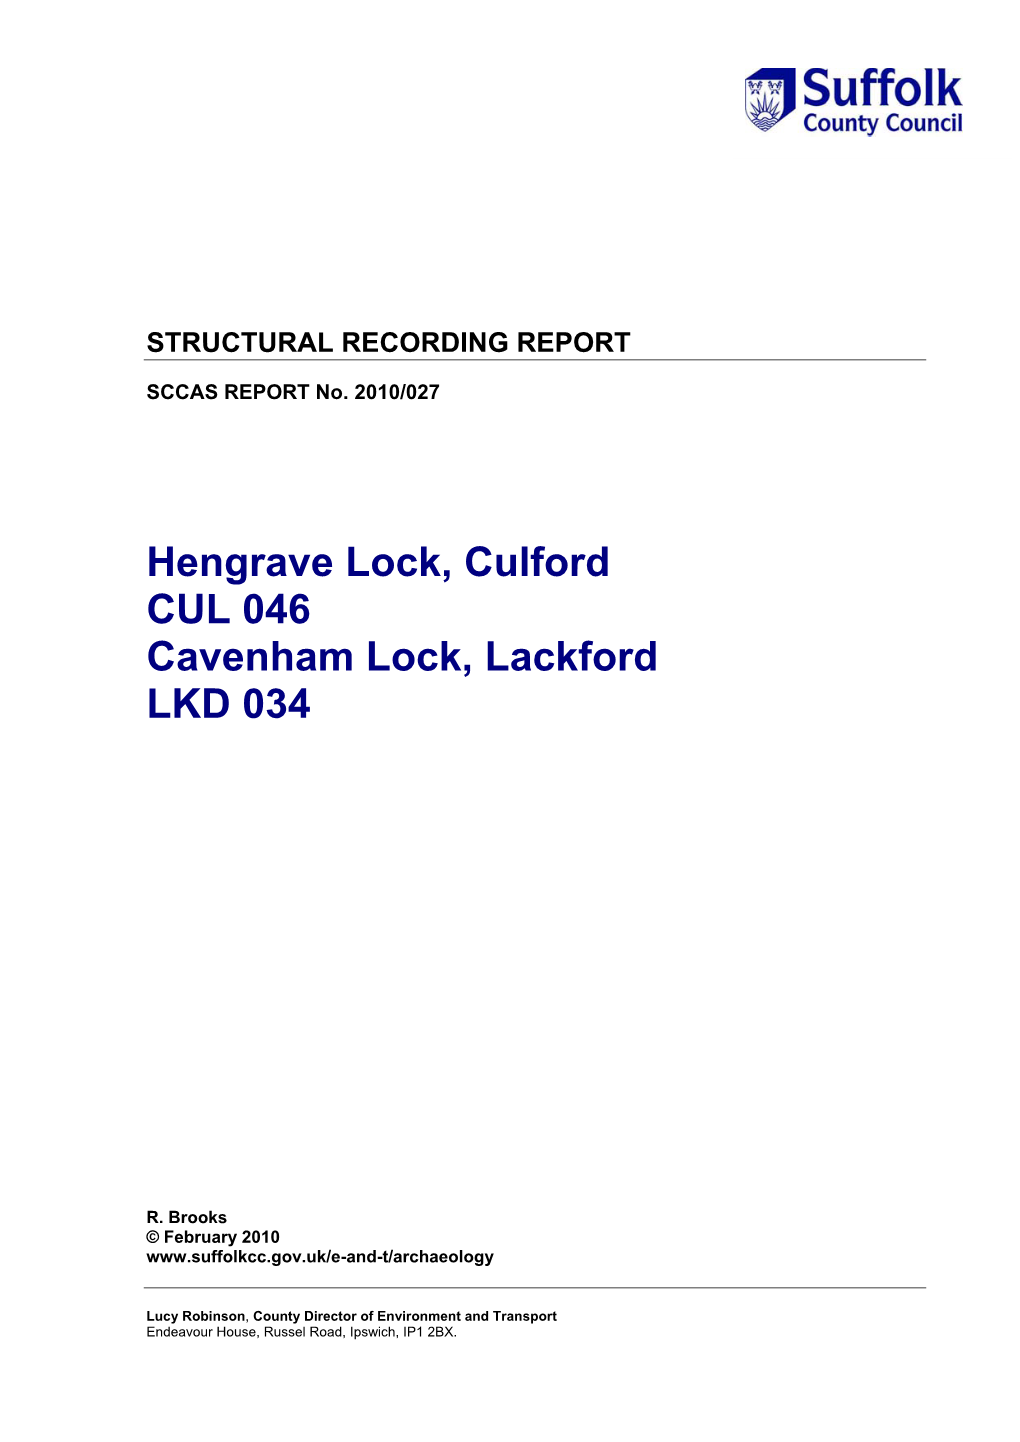 Hengrave Lock, Culford CUL 046 Cavenham Lock, Lackford LKD 034